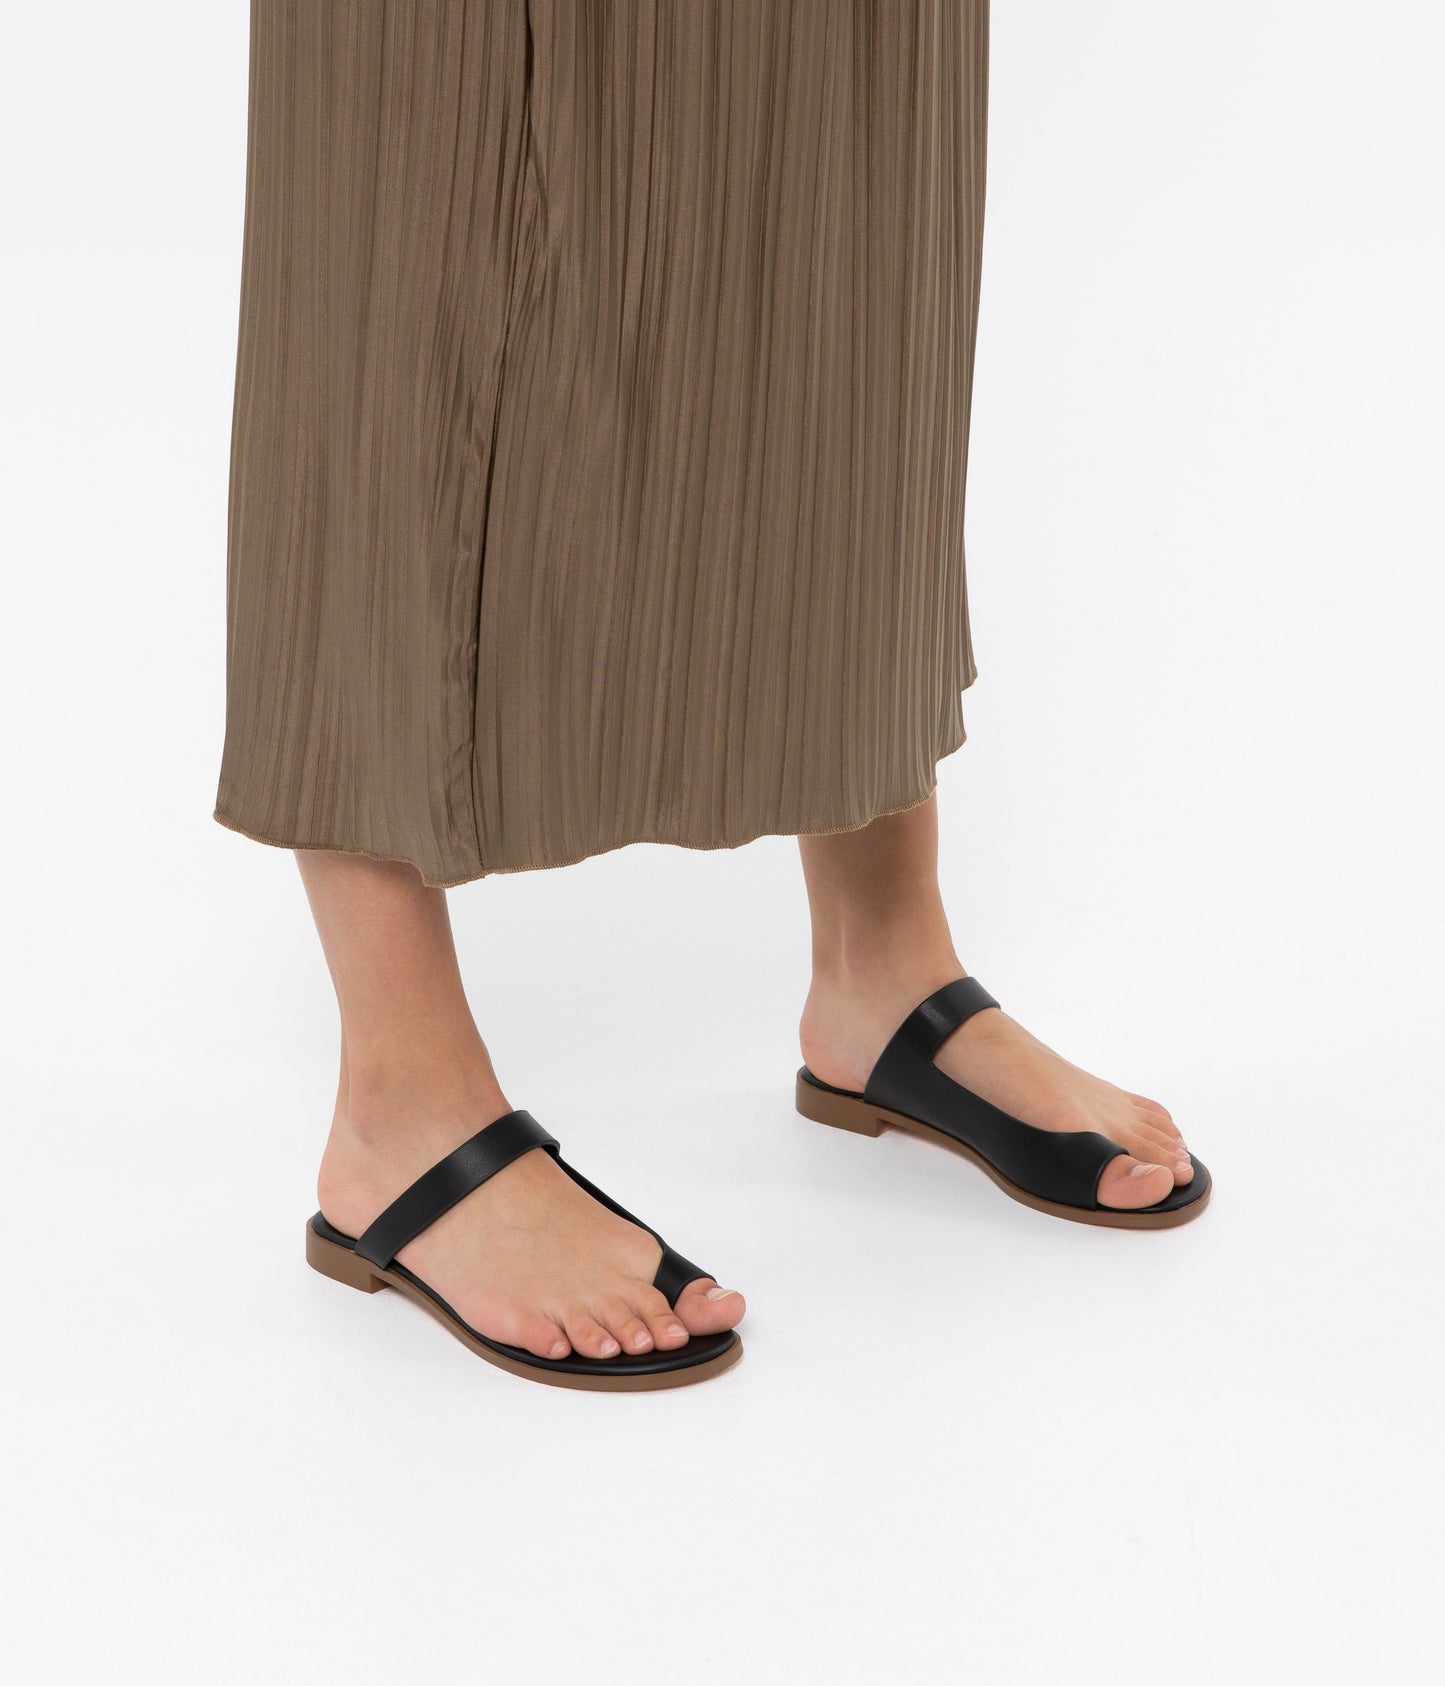 HIROE Vegan Slip On Sandals | Color: Black - variant::black